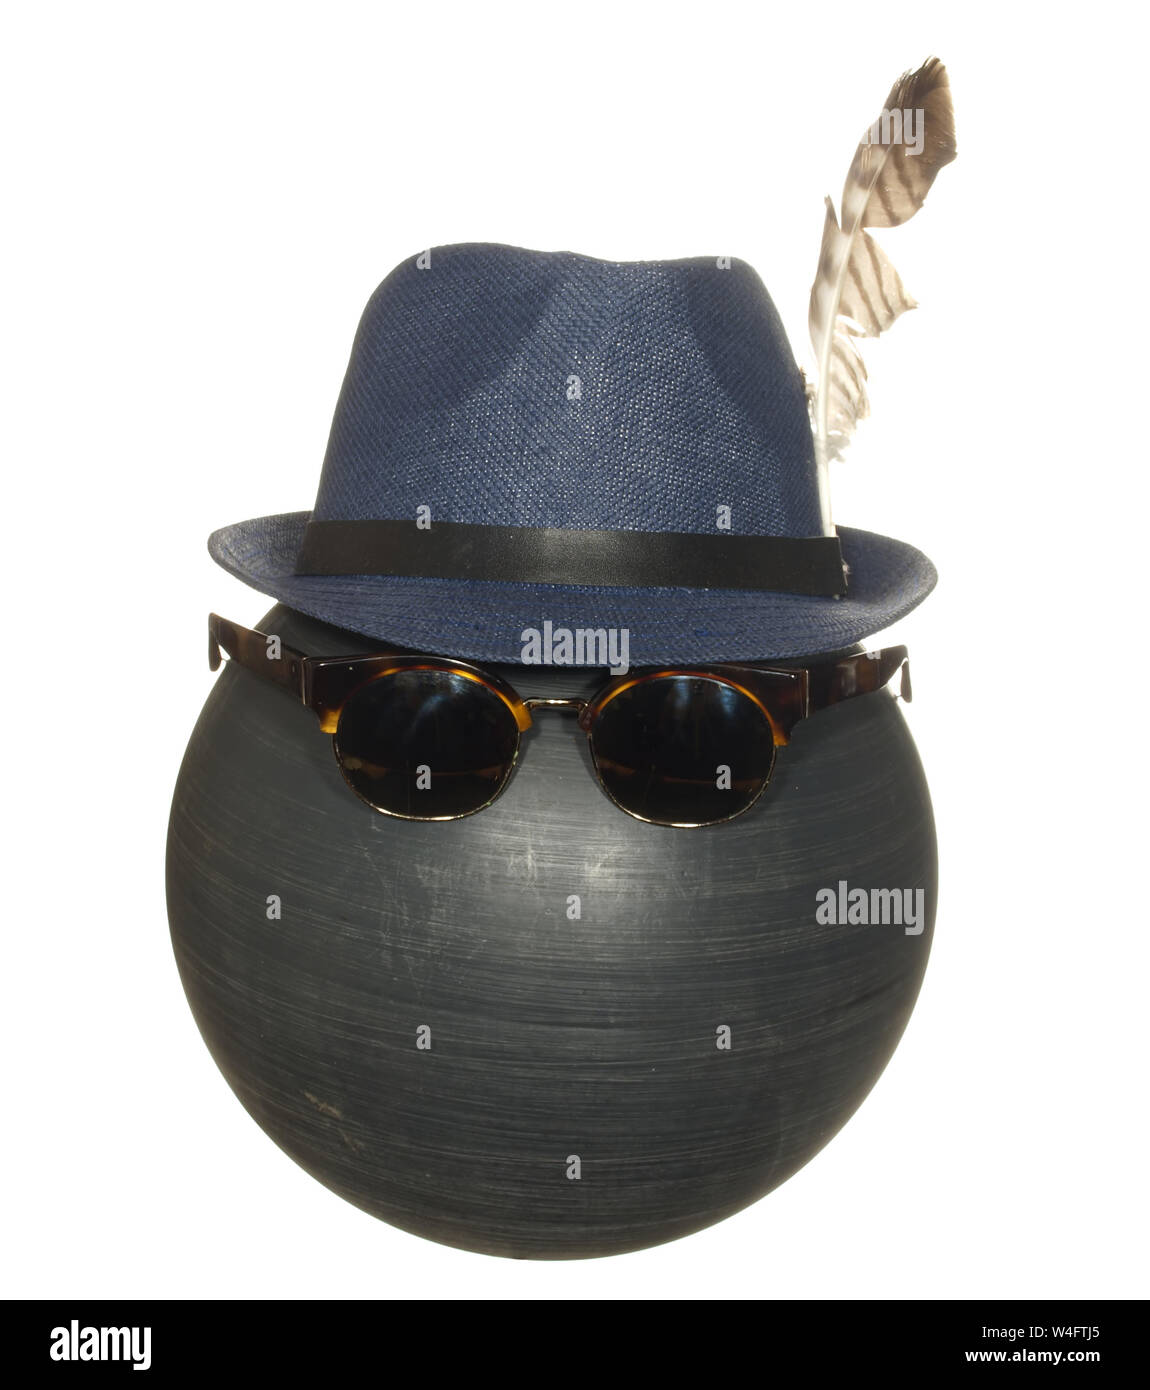 Men's chapeau bleu avec une plume d'oiseau et des lunettes sombres sur une balle de plastique noir isolé sur fond blanc. Banque D'Images